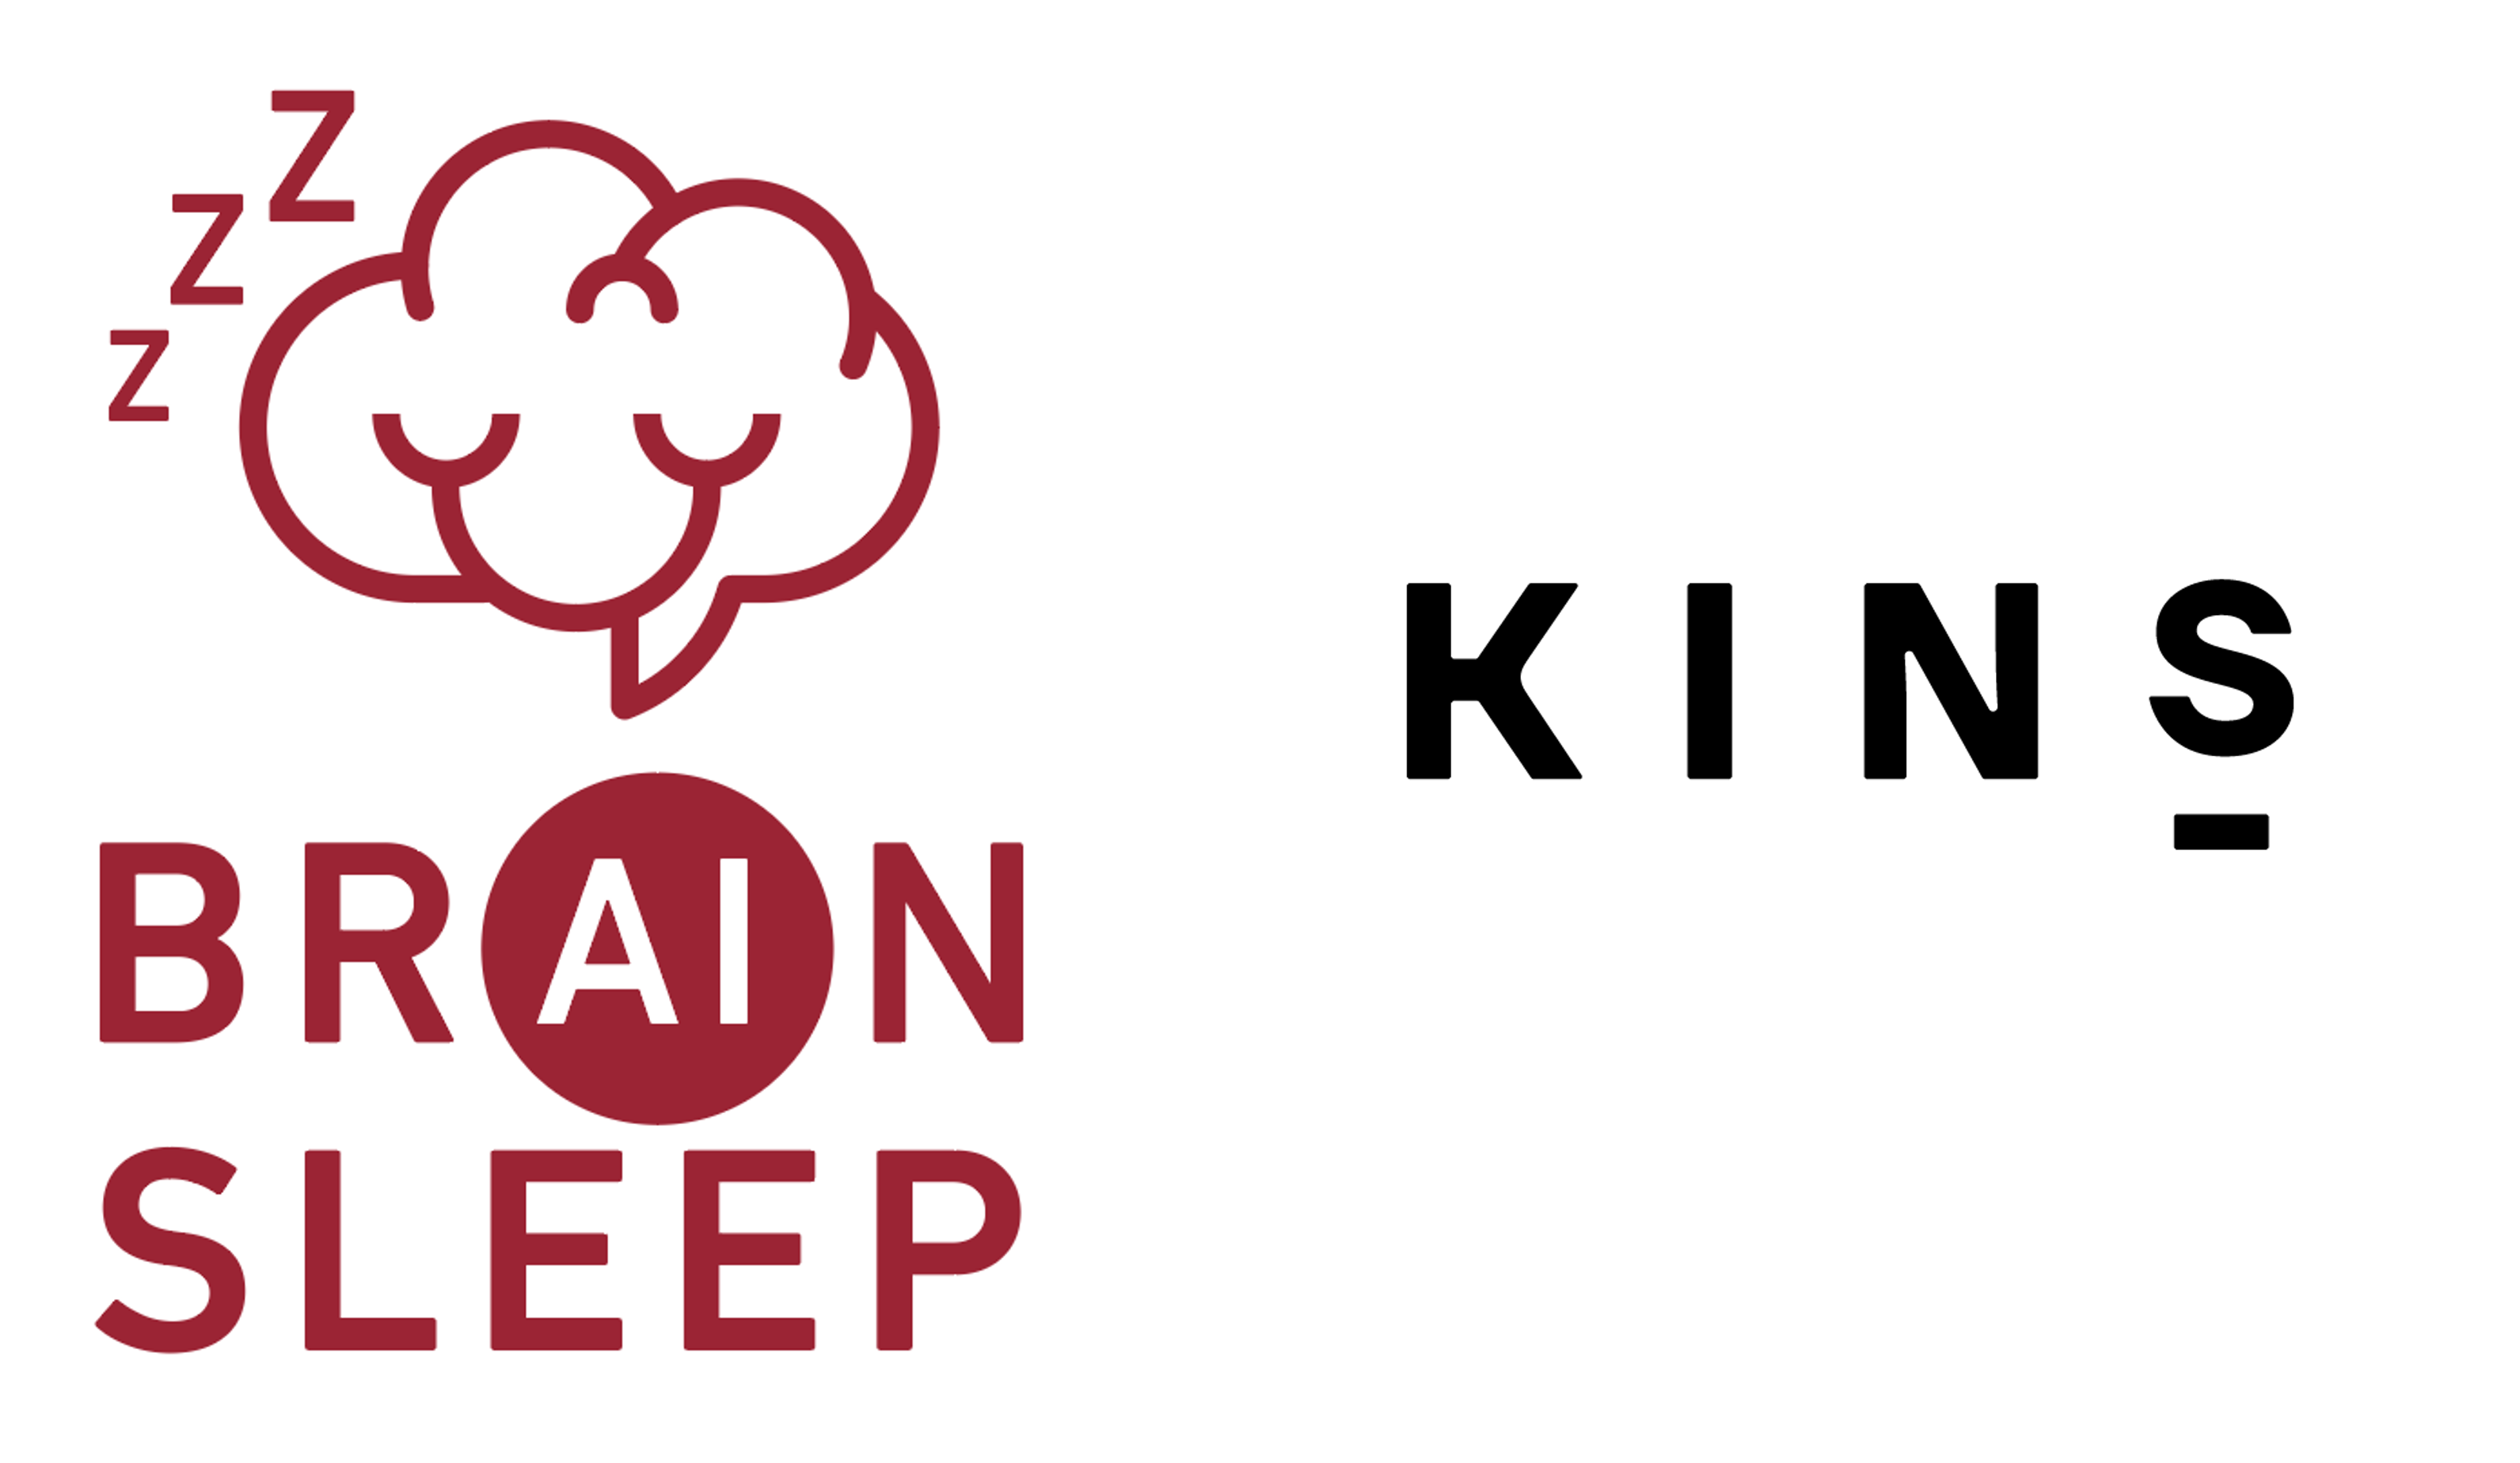 脳 と睡眠を科学する ブレインスリープ と総合的な菌ケアサービスを展開する Kins が腸内環境と睡眠の関係性について共同研究を開始 株式会社ブレインスリープのプレスリリース